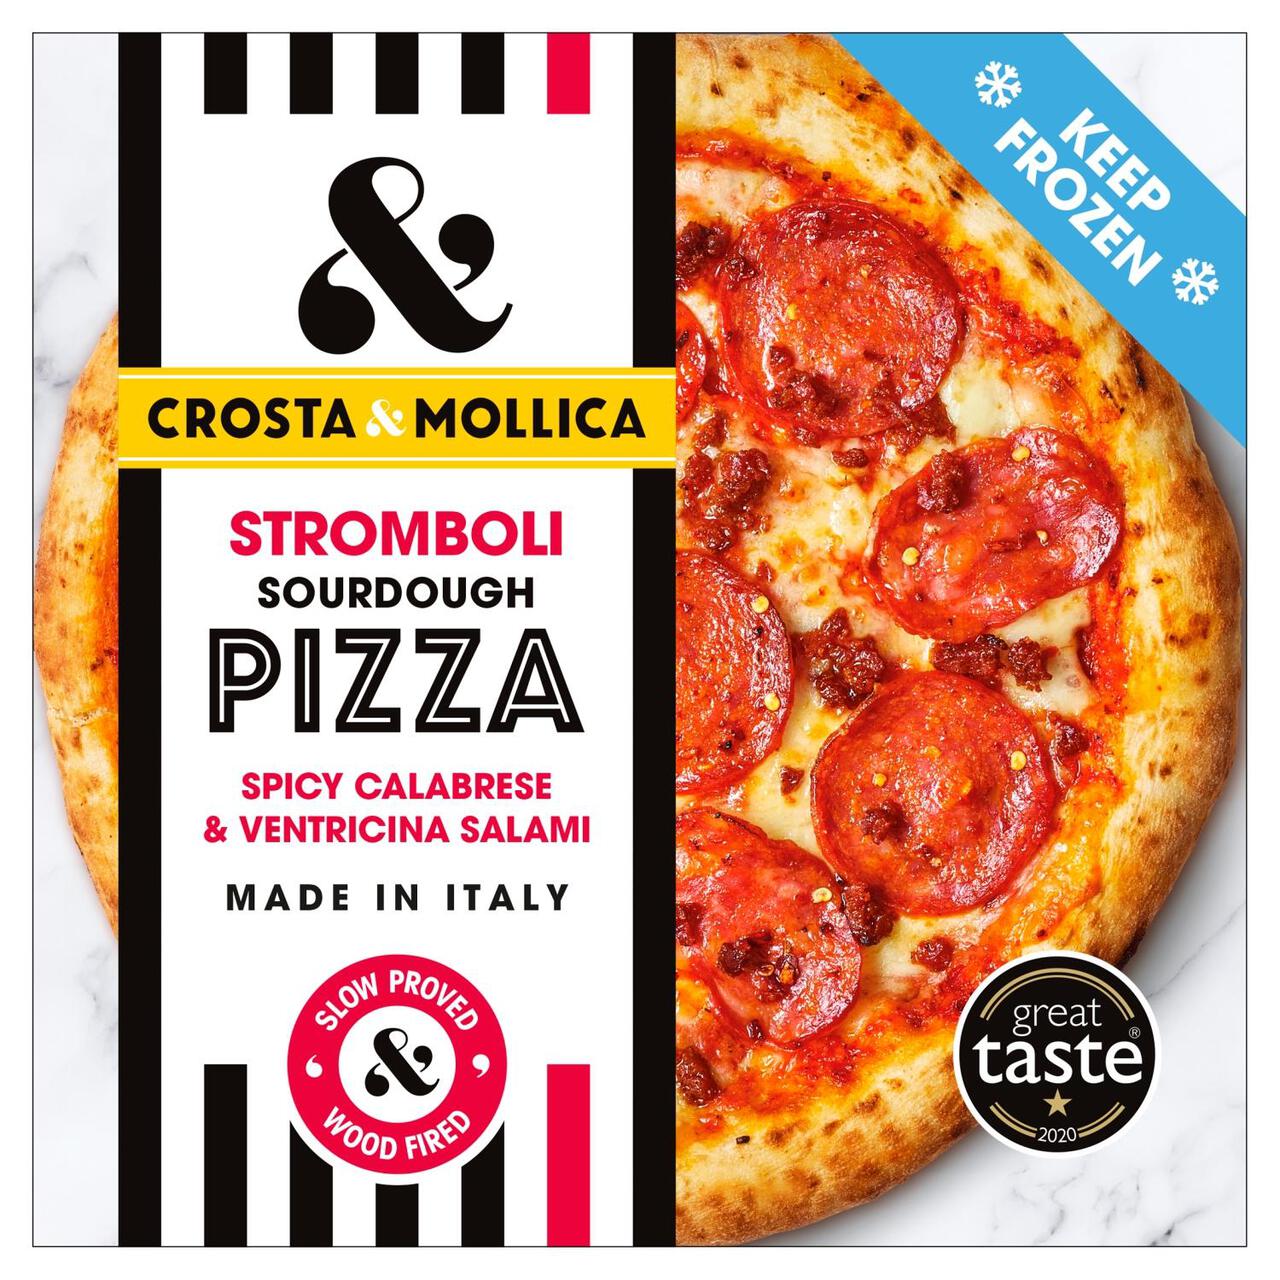 Crosta & Mollica Stromboli Sourdough Pizza with Pepperoni & Spicy Salami 447g